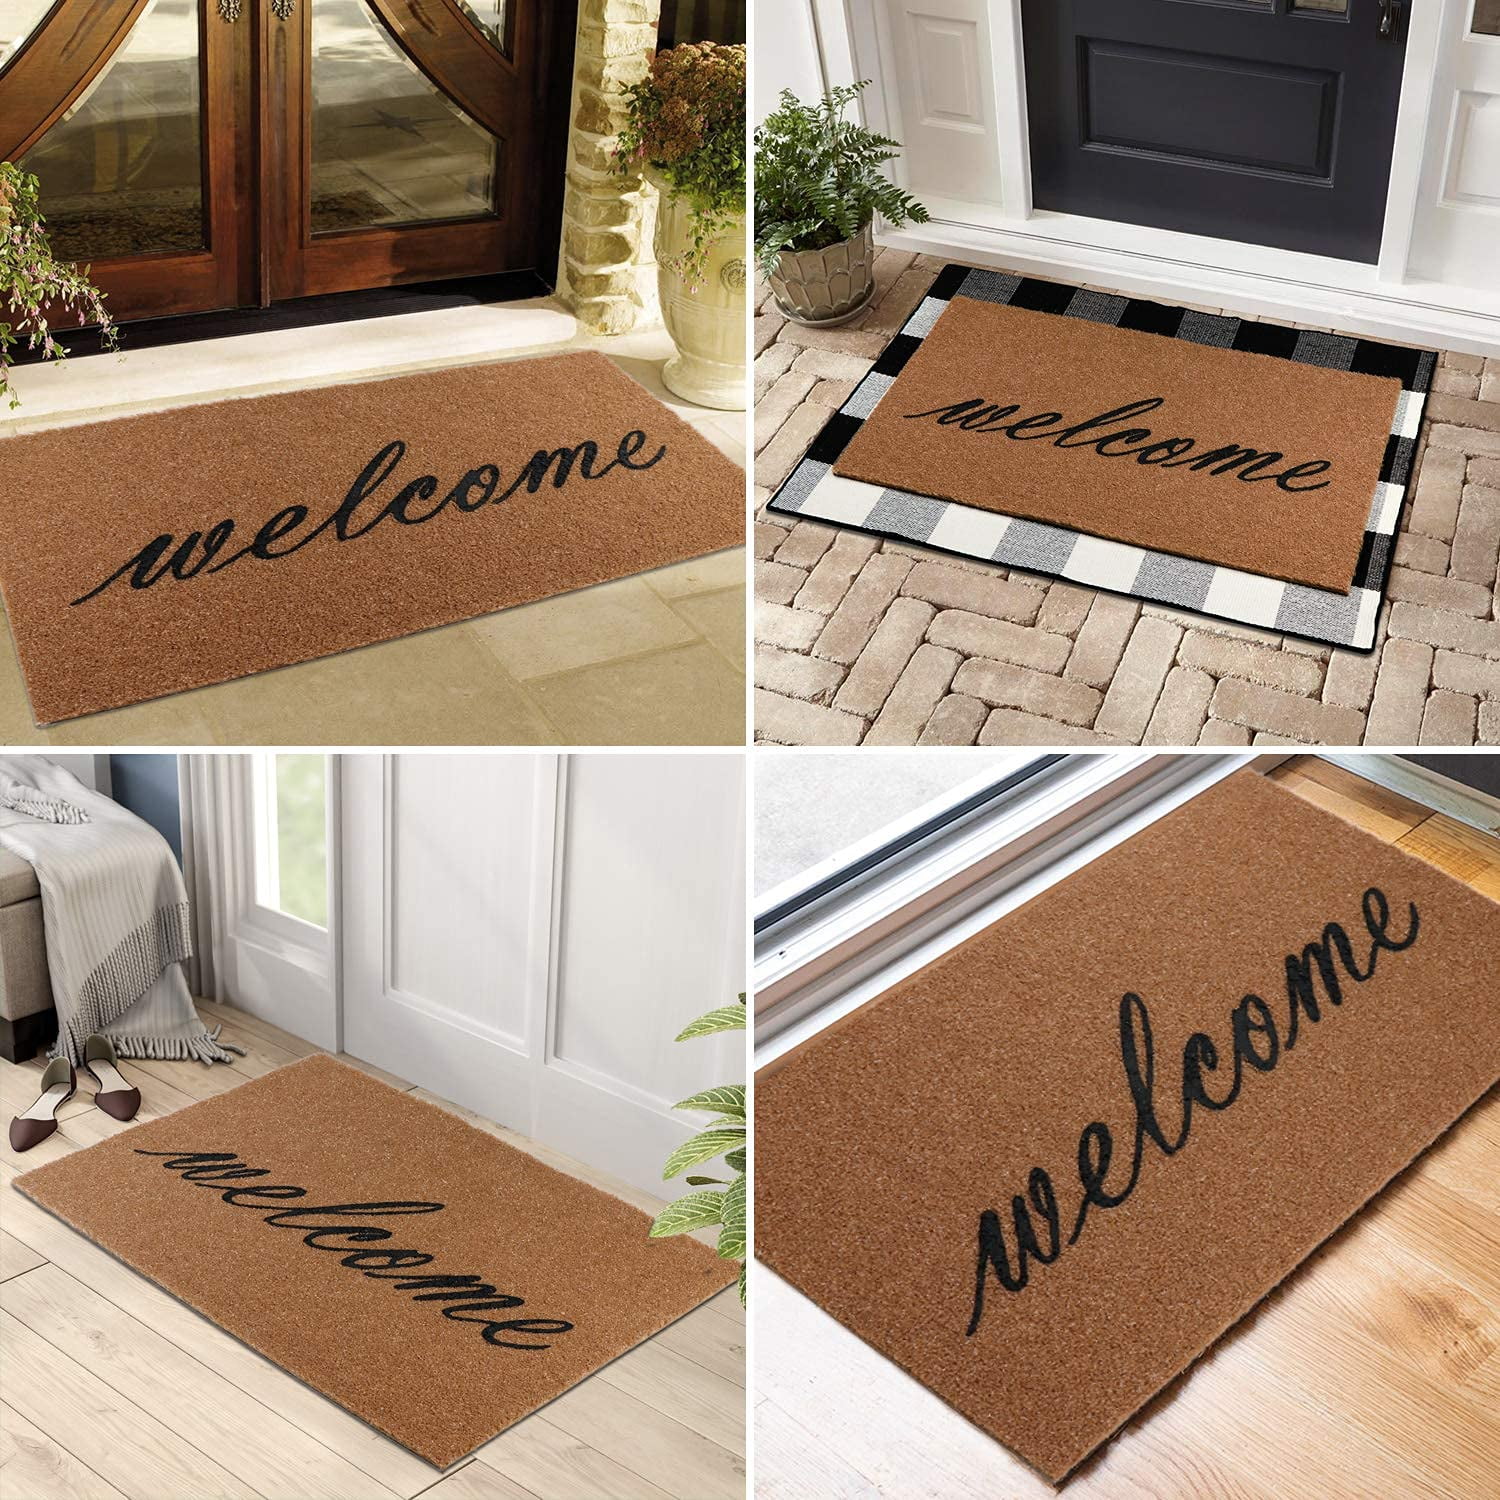  ZSL Indoor Outdoor Doormat Non Slip Door Mats Funny Welcome Front  Door mat Personalized Design Kitchen Non Slip Entrance Shoe mat and Rugs  (23.6 X 15.7 in) Welcome Please Remove Your